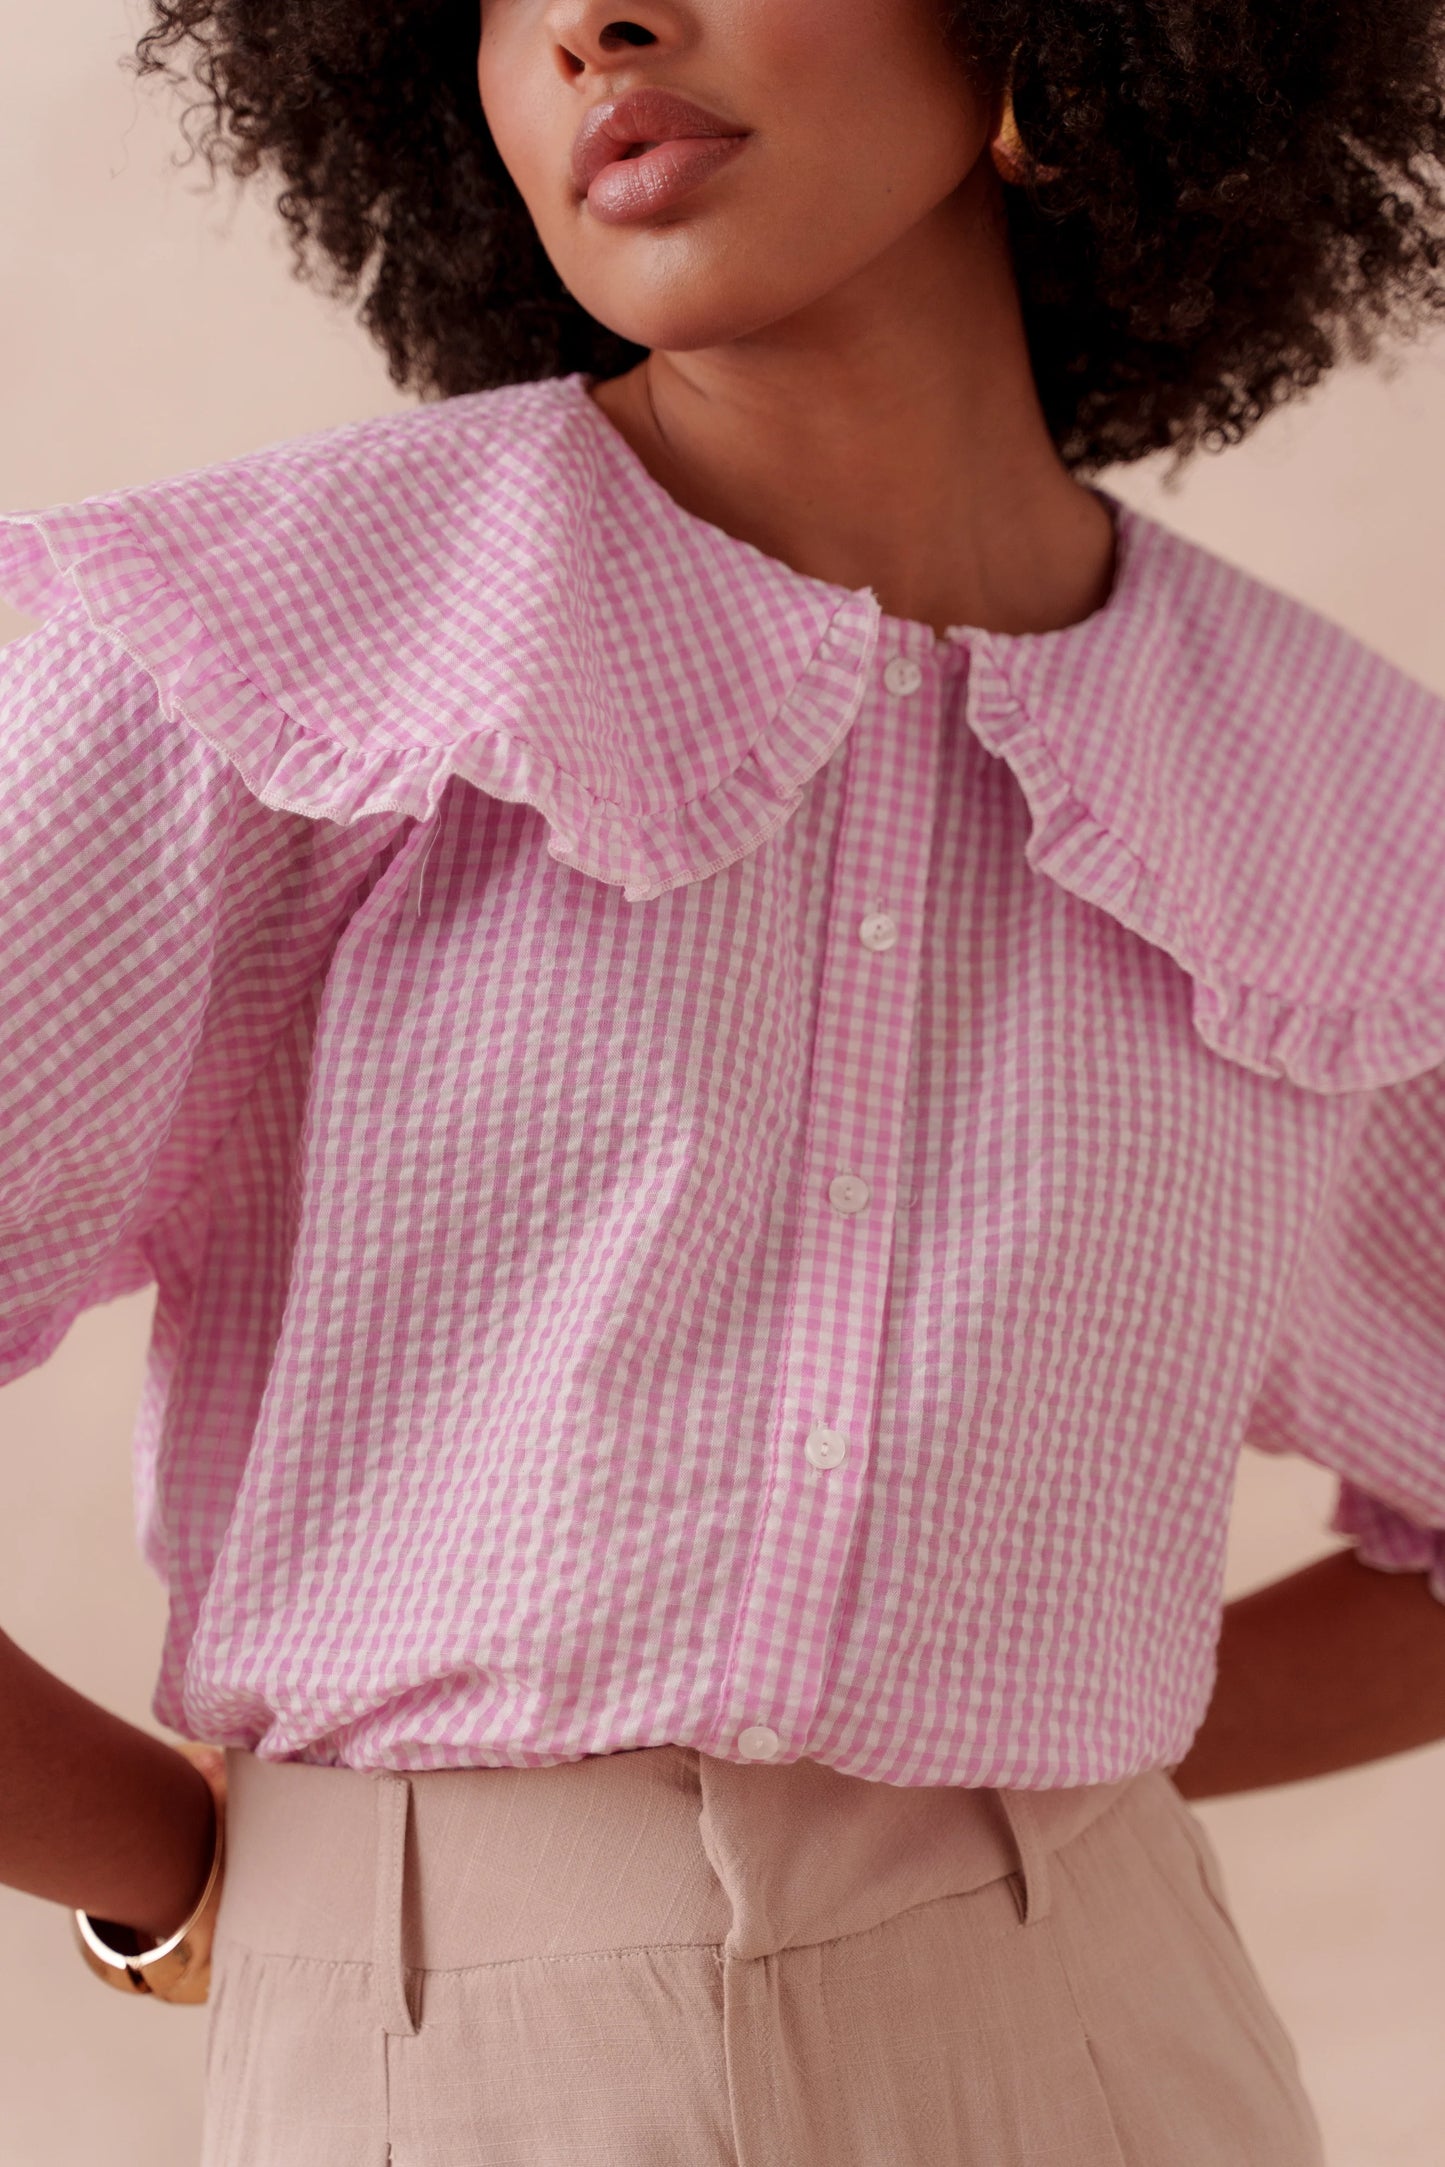 Gingham pink peter pan collar shirt